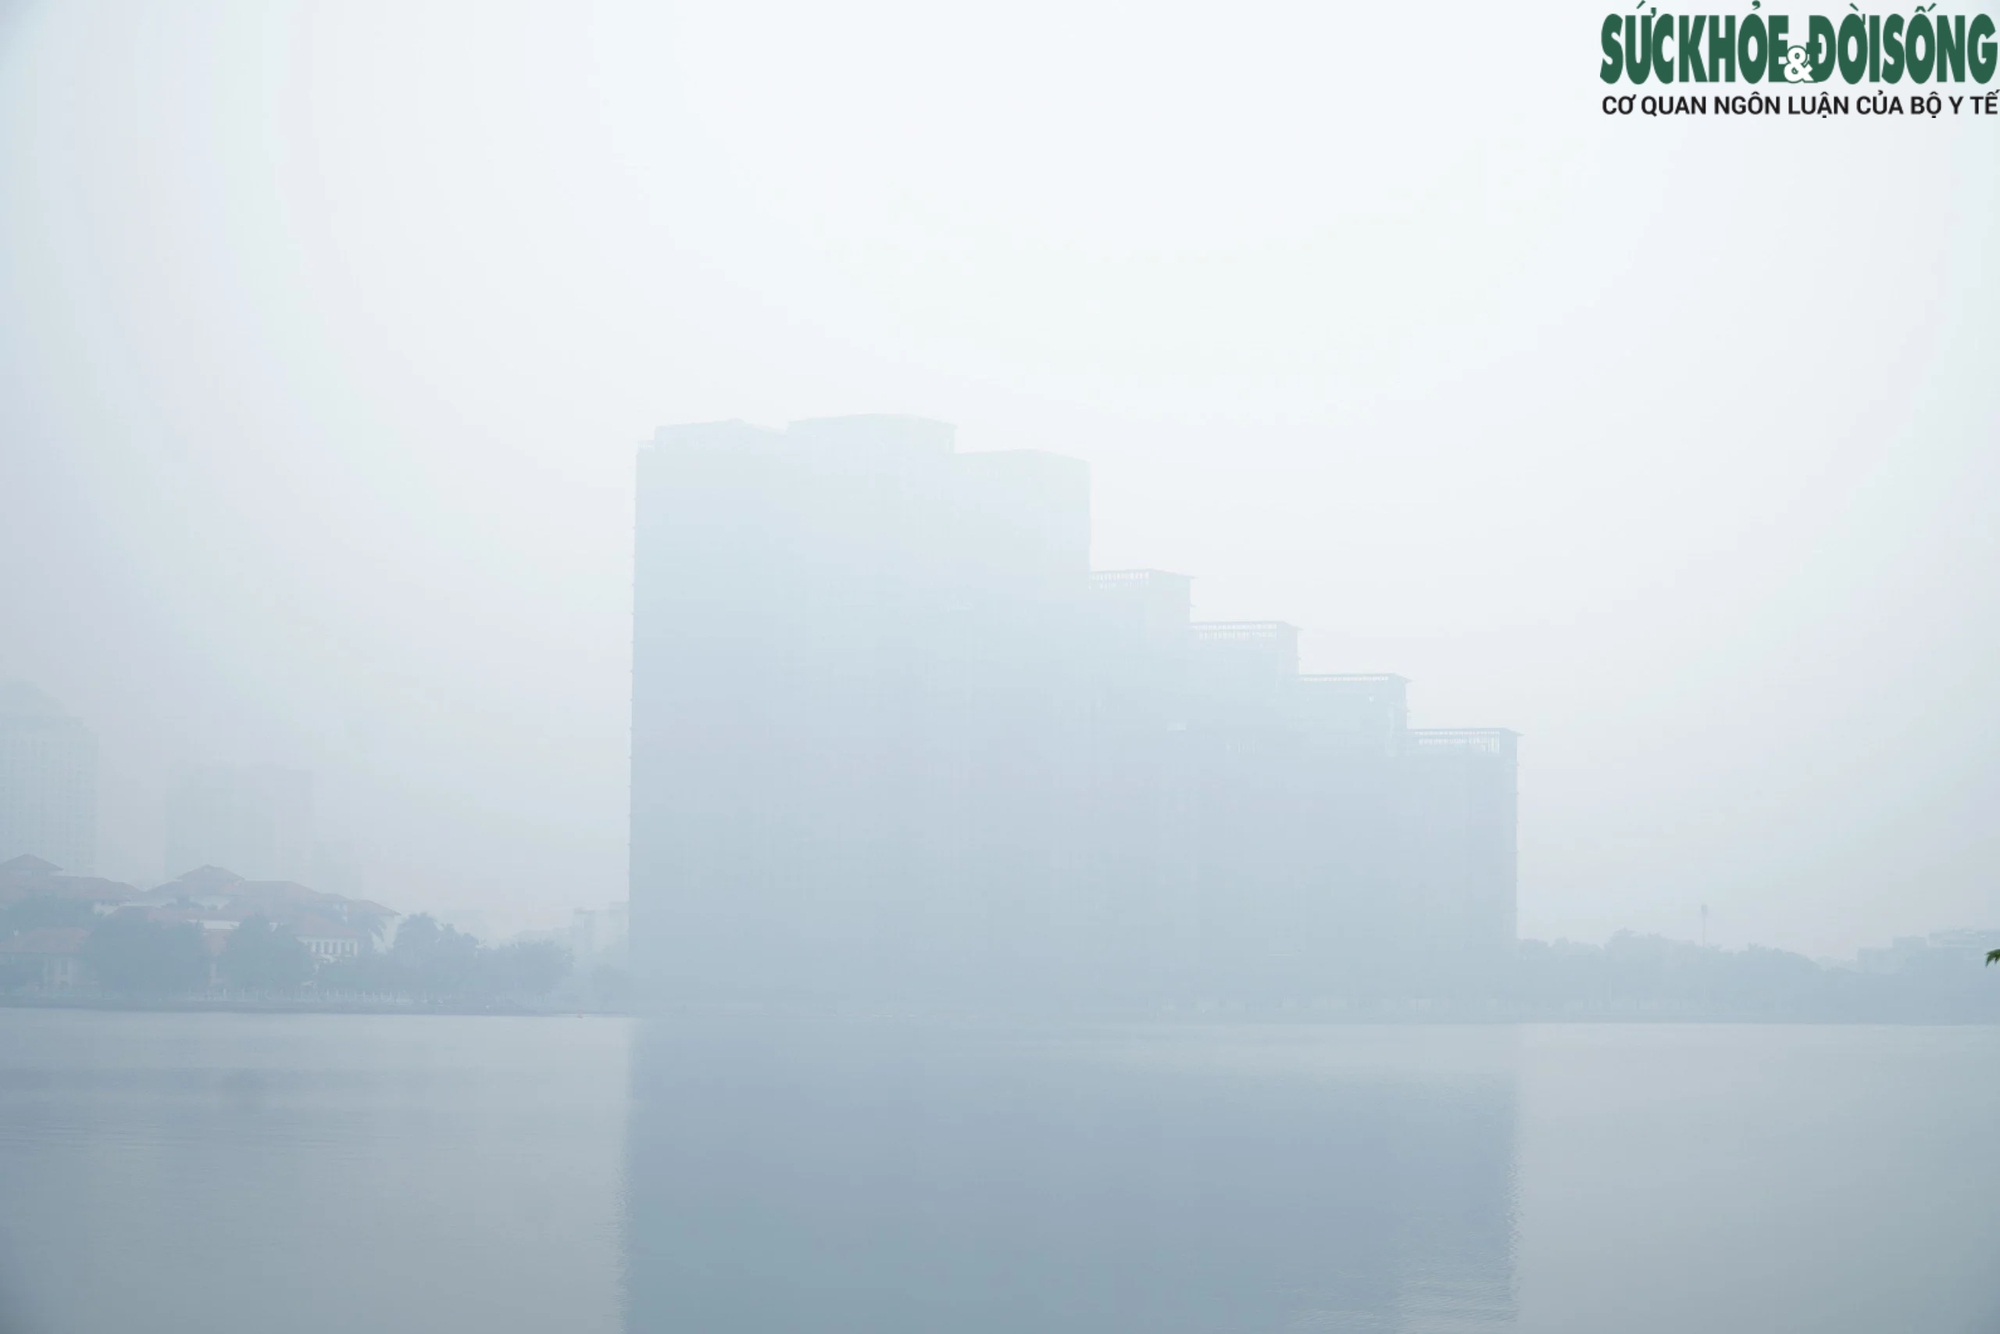 Mưa lạnh, sương mù 'nuốt chửng' loạt tòa chung cư cao tầng ở Hà Nội- Ảnh 1.